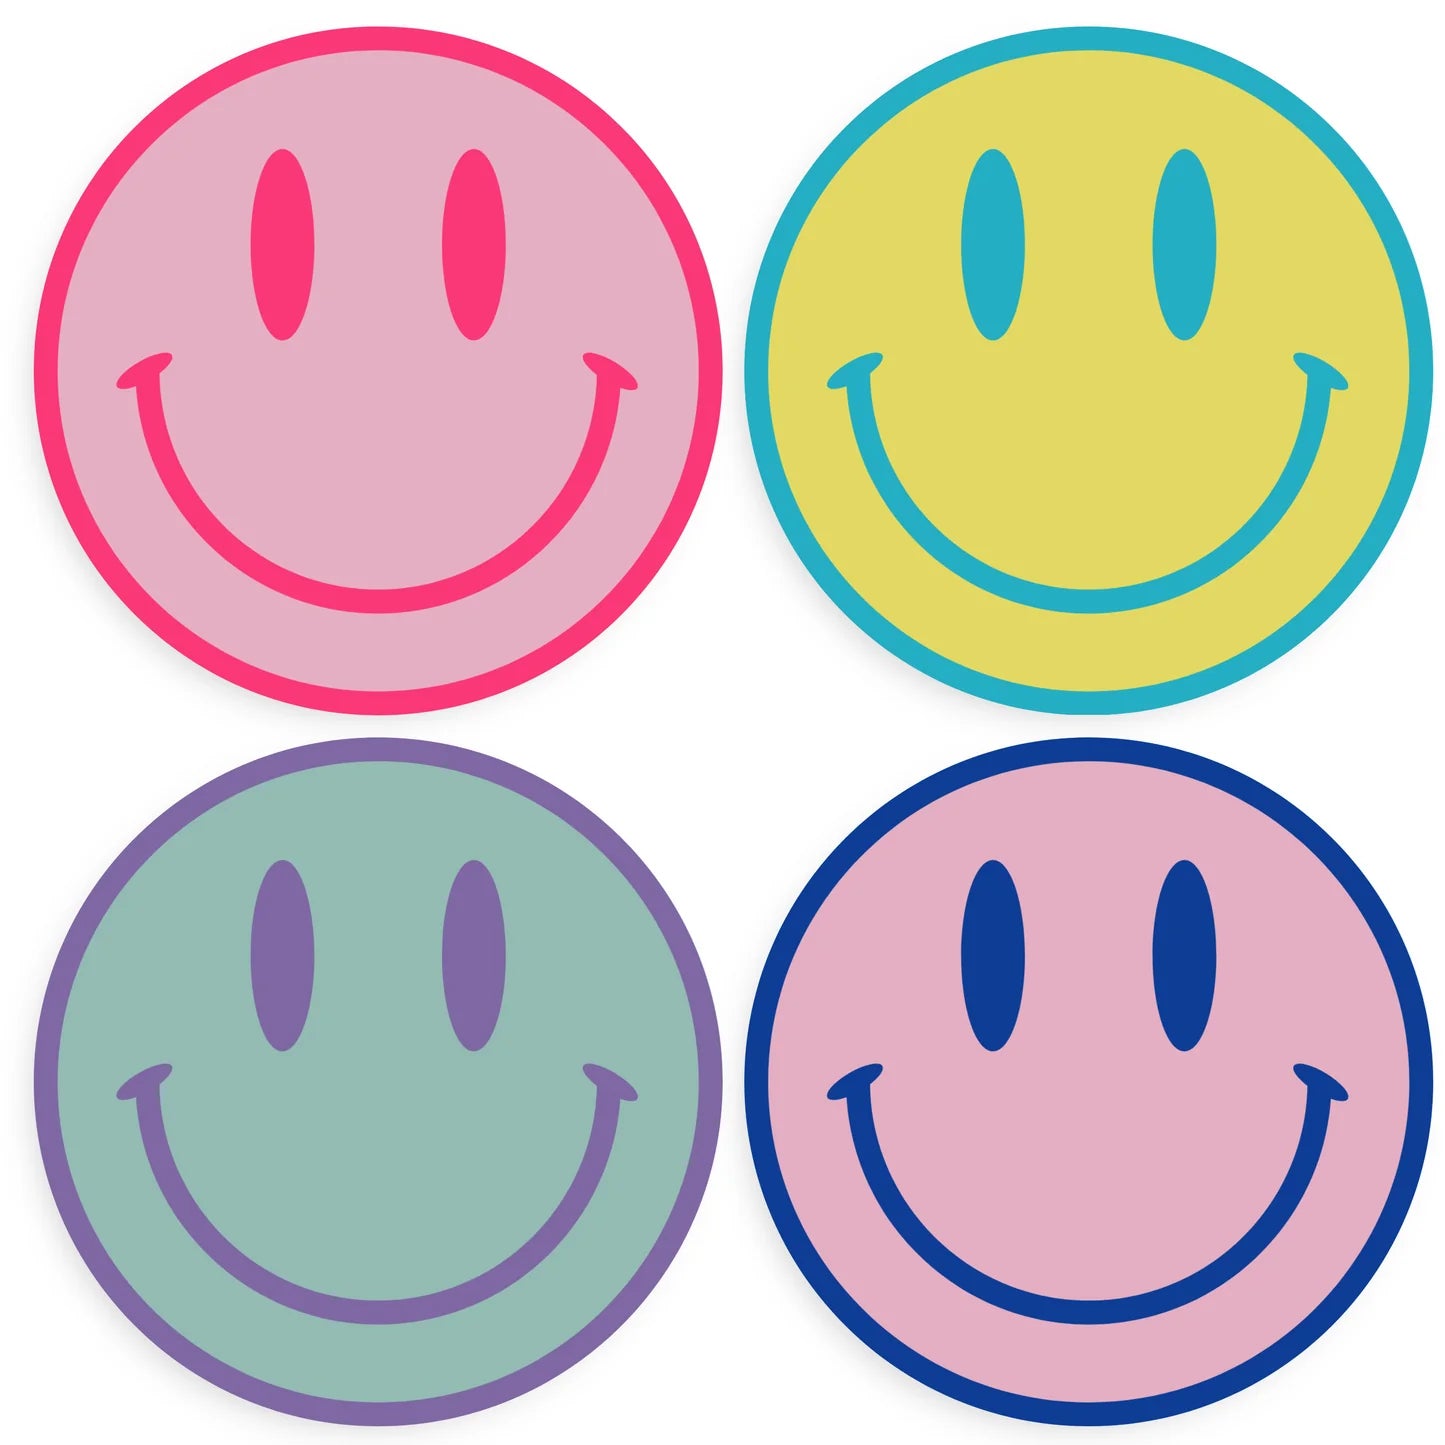 All Smiles Coaster (Set of 4)